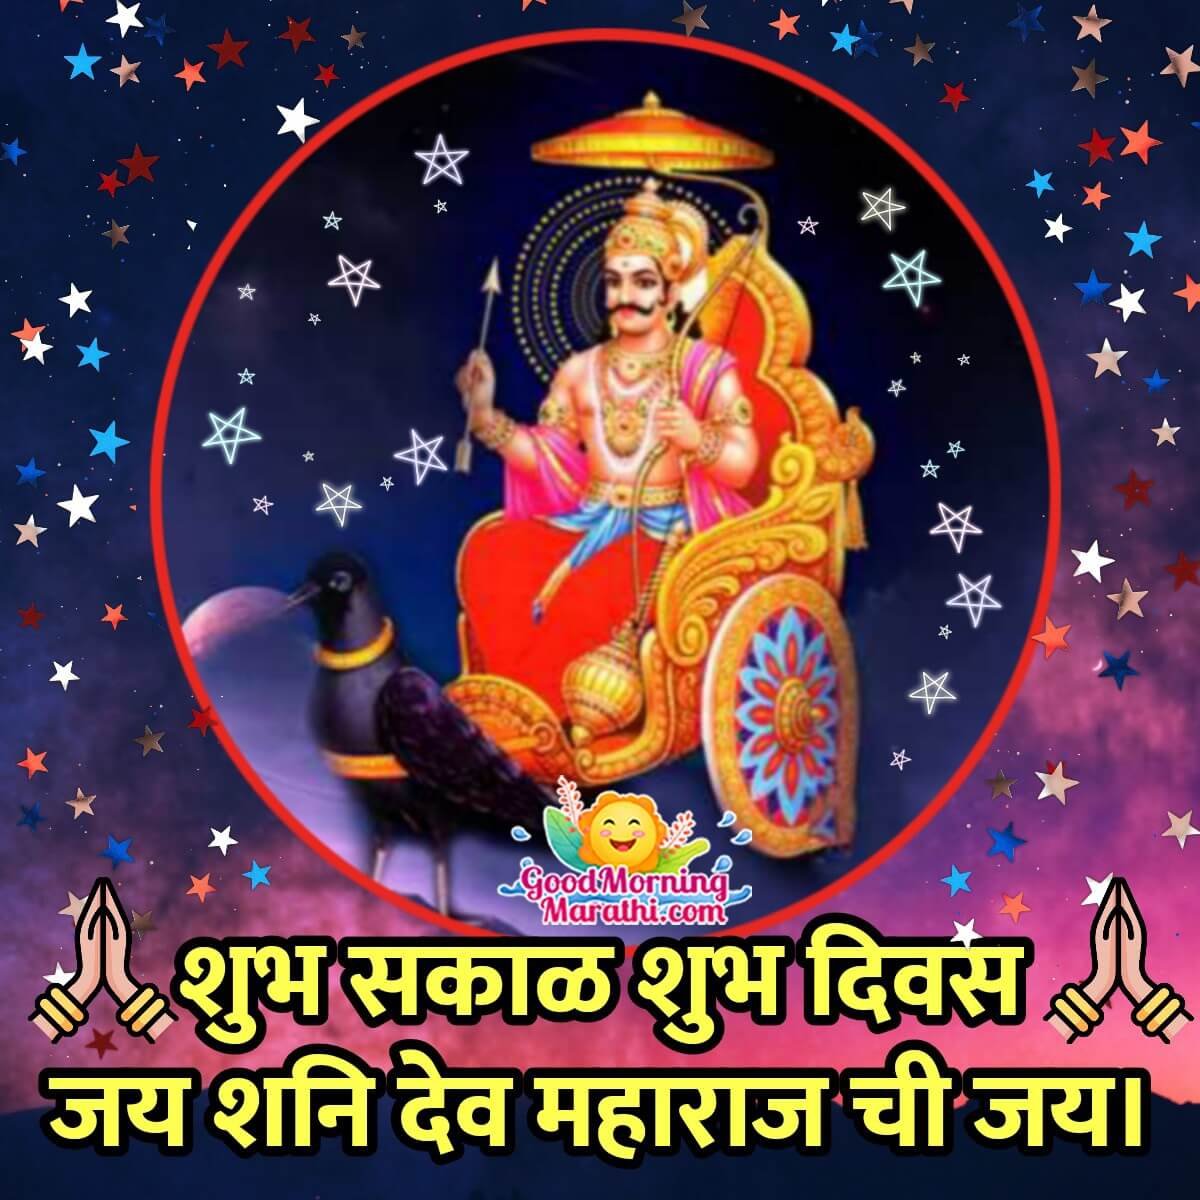 Shubh Prabhat Shanidev Marathi Wish